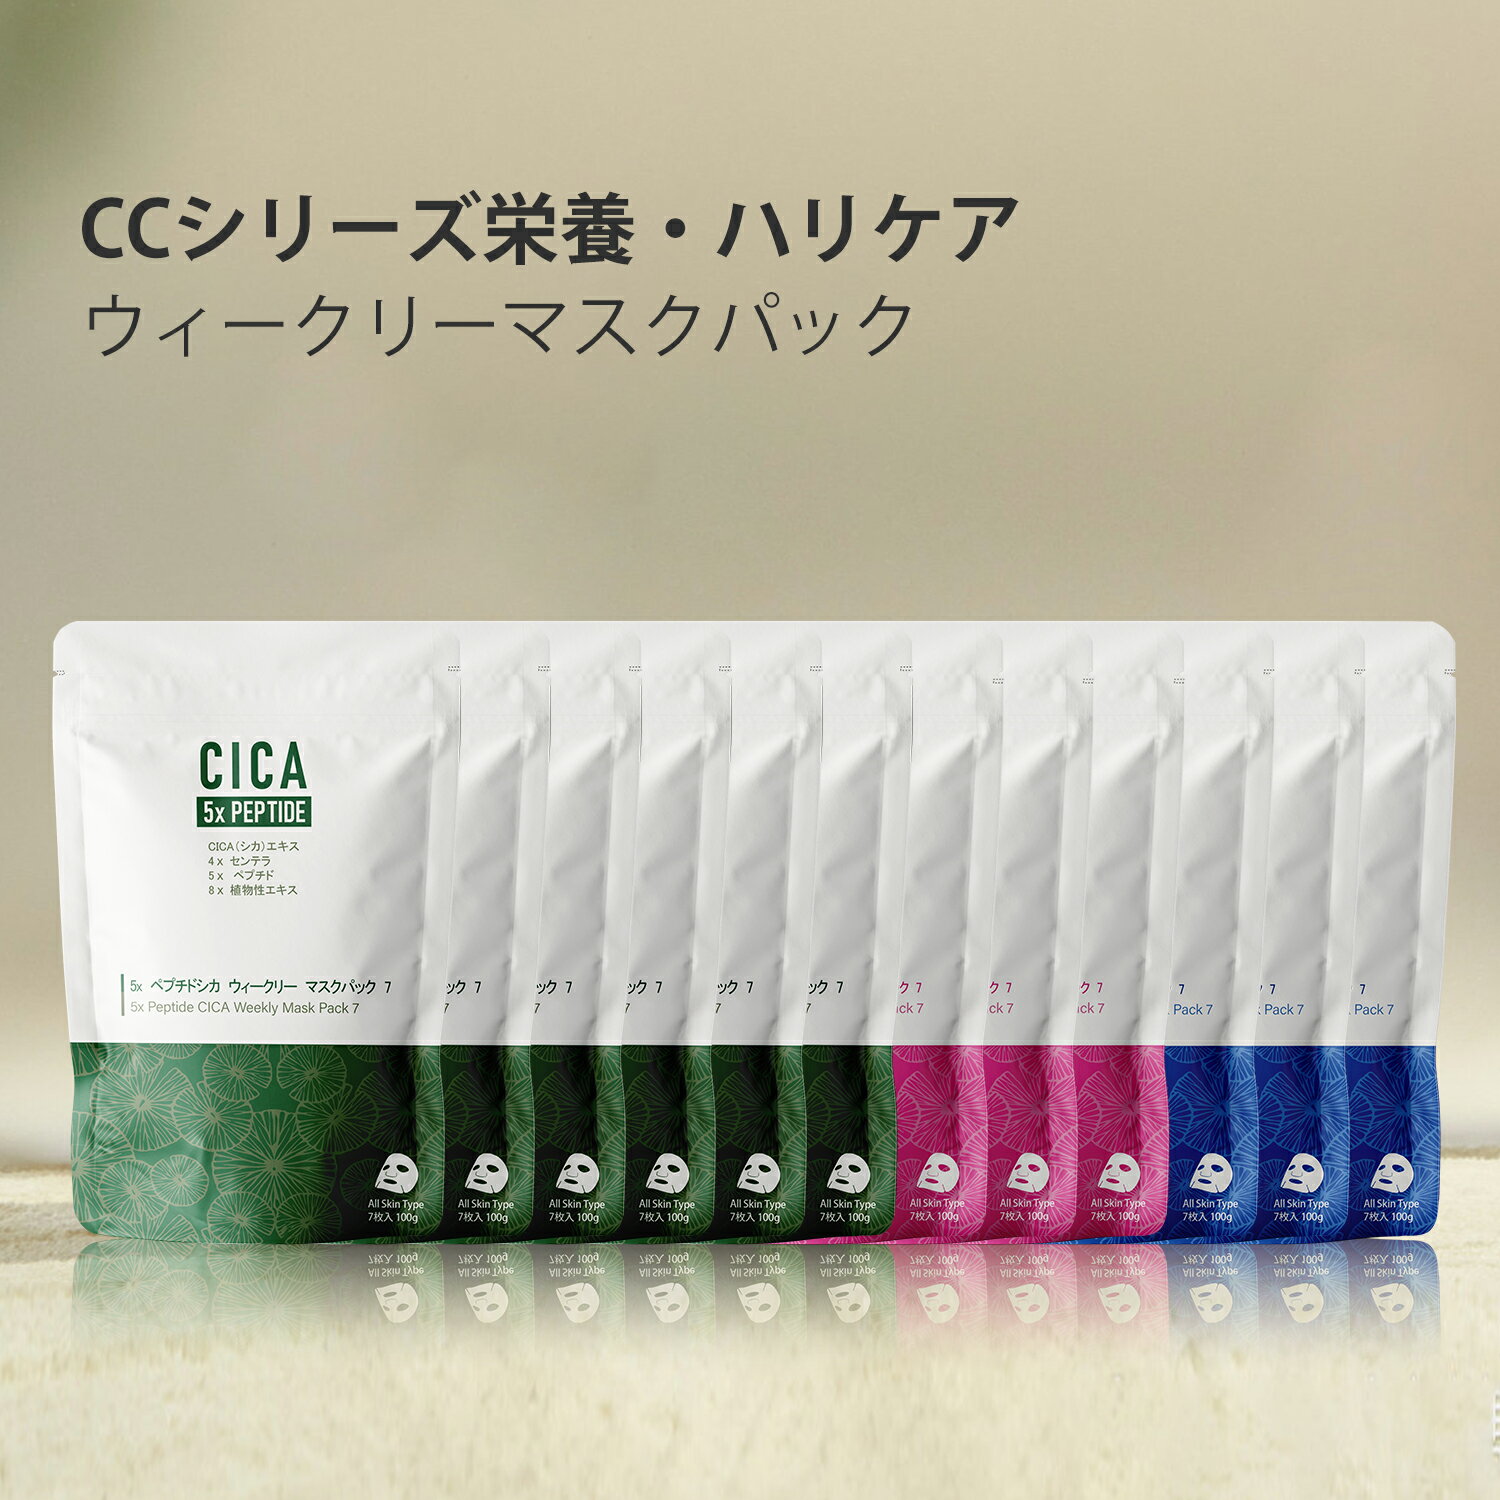  日本製 CICA シカ 2種コラーゲン+3種ヒアルロン酸+5種ペプチシカ保湿 スキンケア 潤い フェイスマスクパック 7枚x12袋